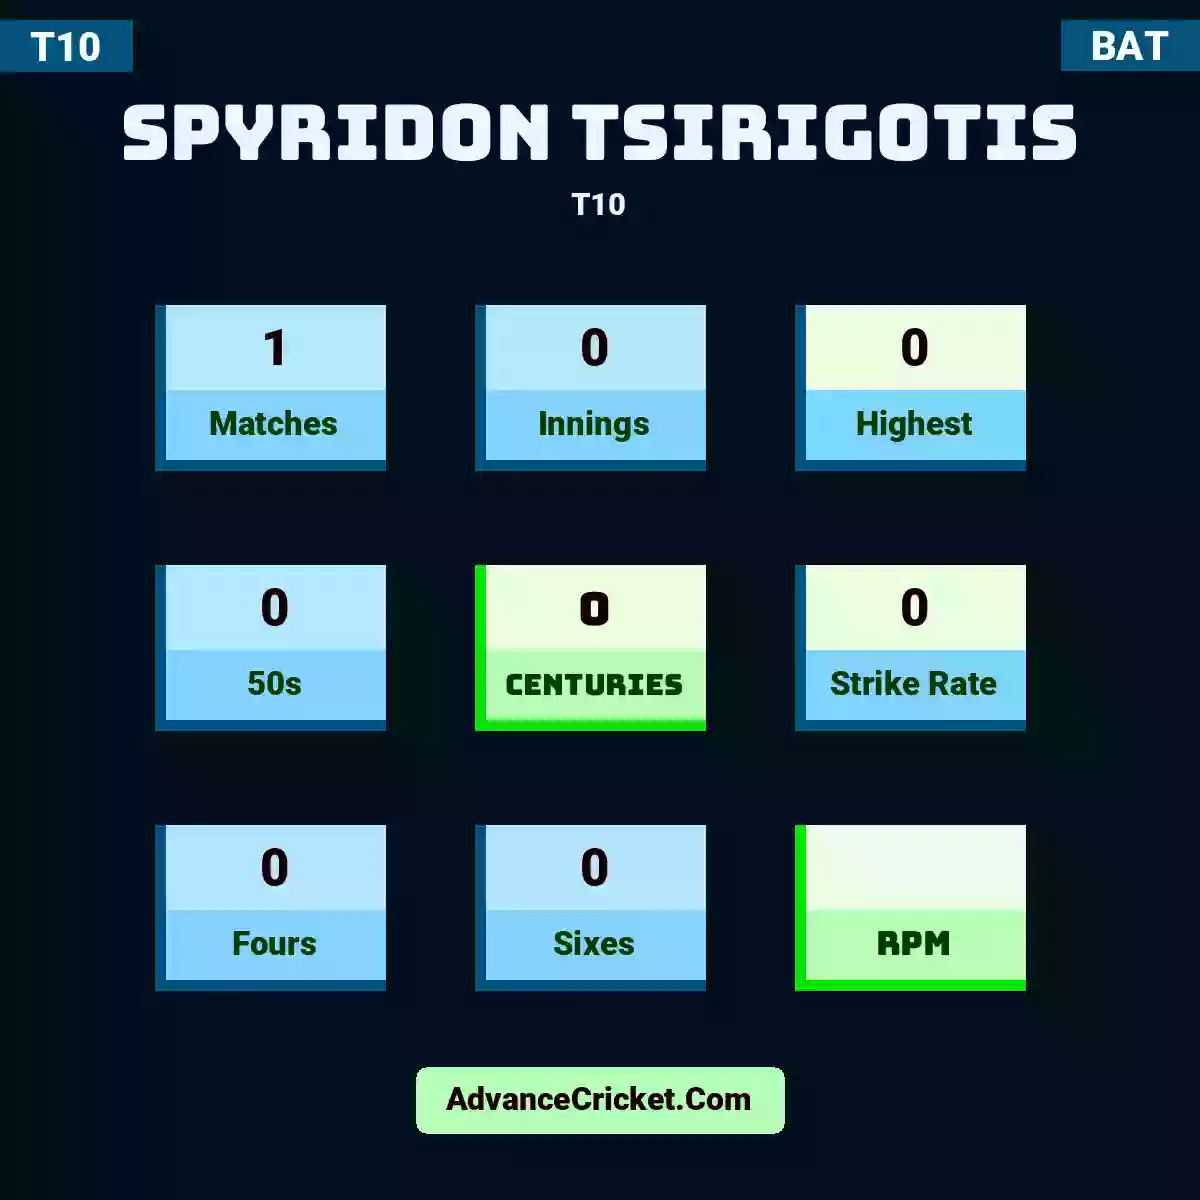 Spyridon Tsirigotis T10 , Spyridon Tsirigotis played 1 matches, scored 0 runs as highest, 0 half-centuries, and 0 centuries, with a strike rate of 0. S.Tsirigotis hit 0 fours and 0 sixes.